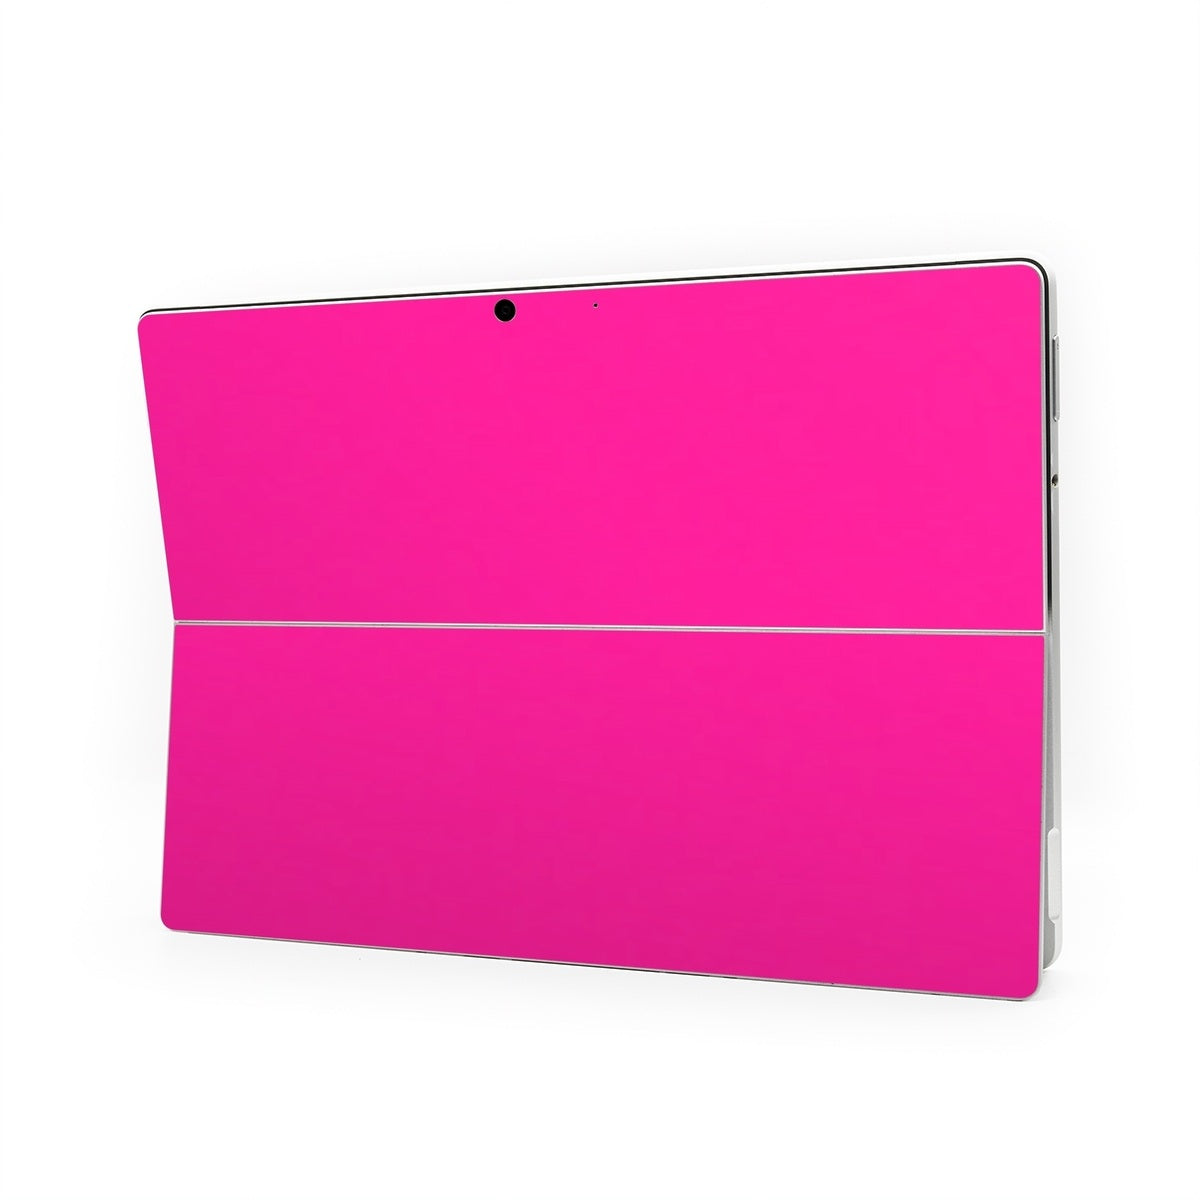 Solid State Malibu Pink - Microsoft Surface Pro Skin